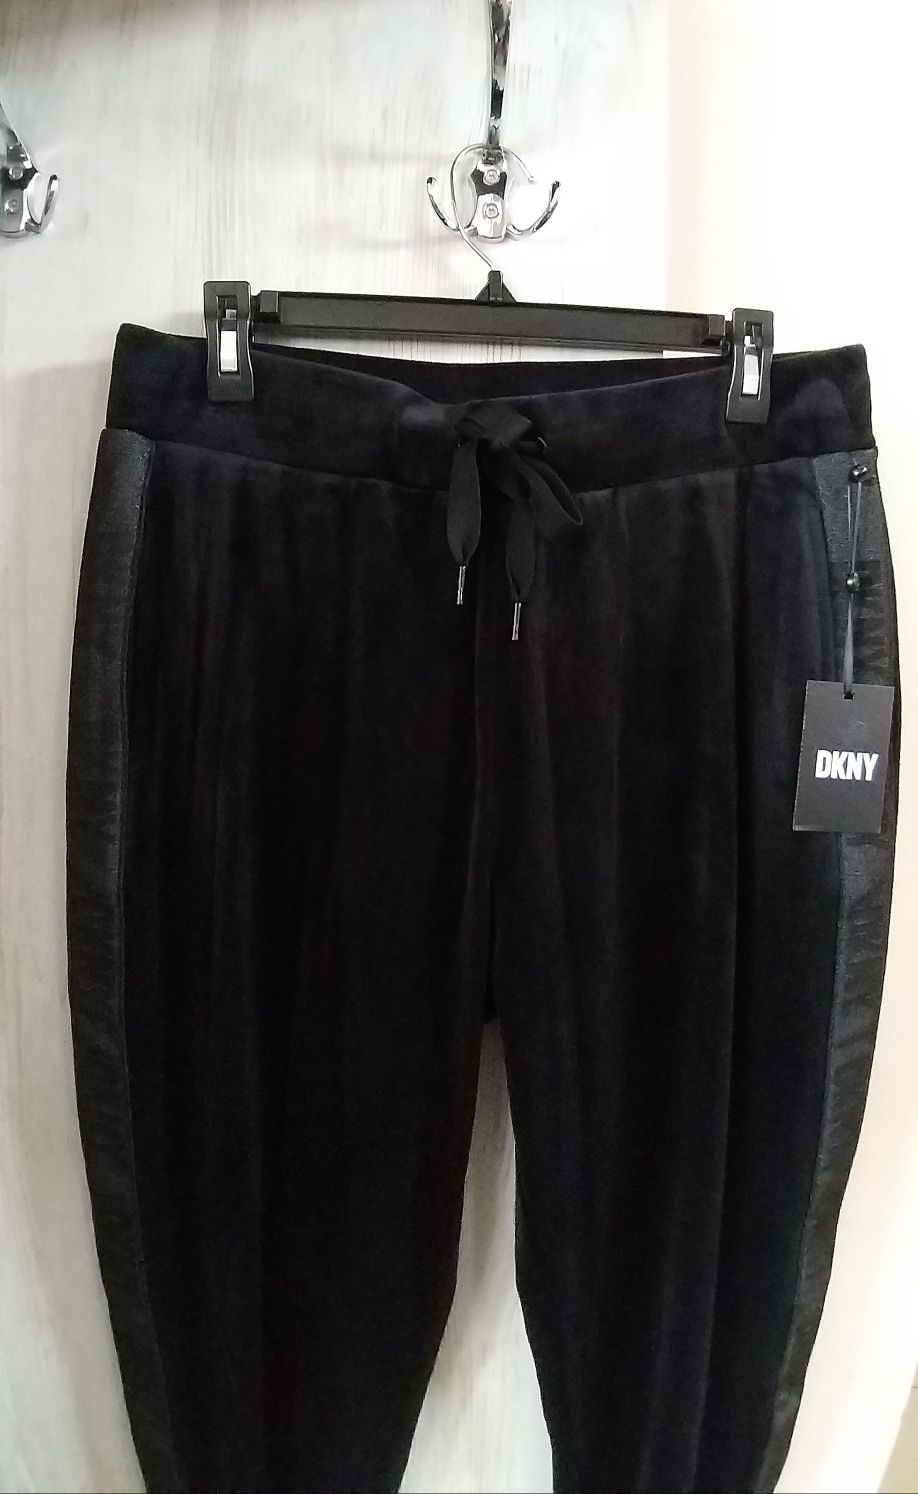 Спортивные штаны DKNY. Оригинал. Размер ХС/С, М/Л